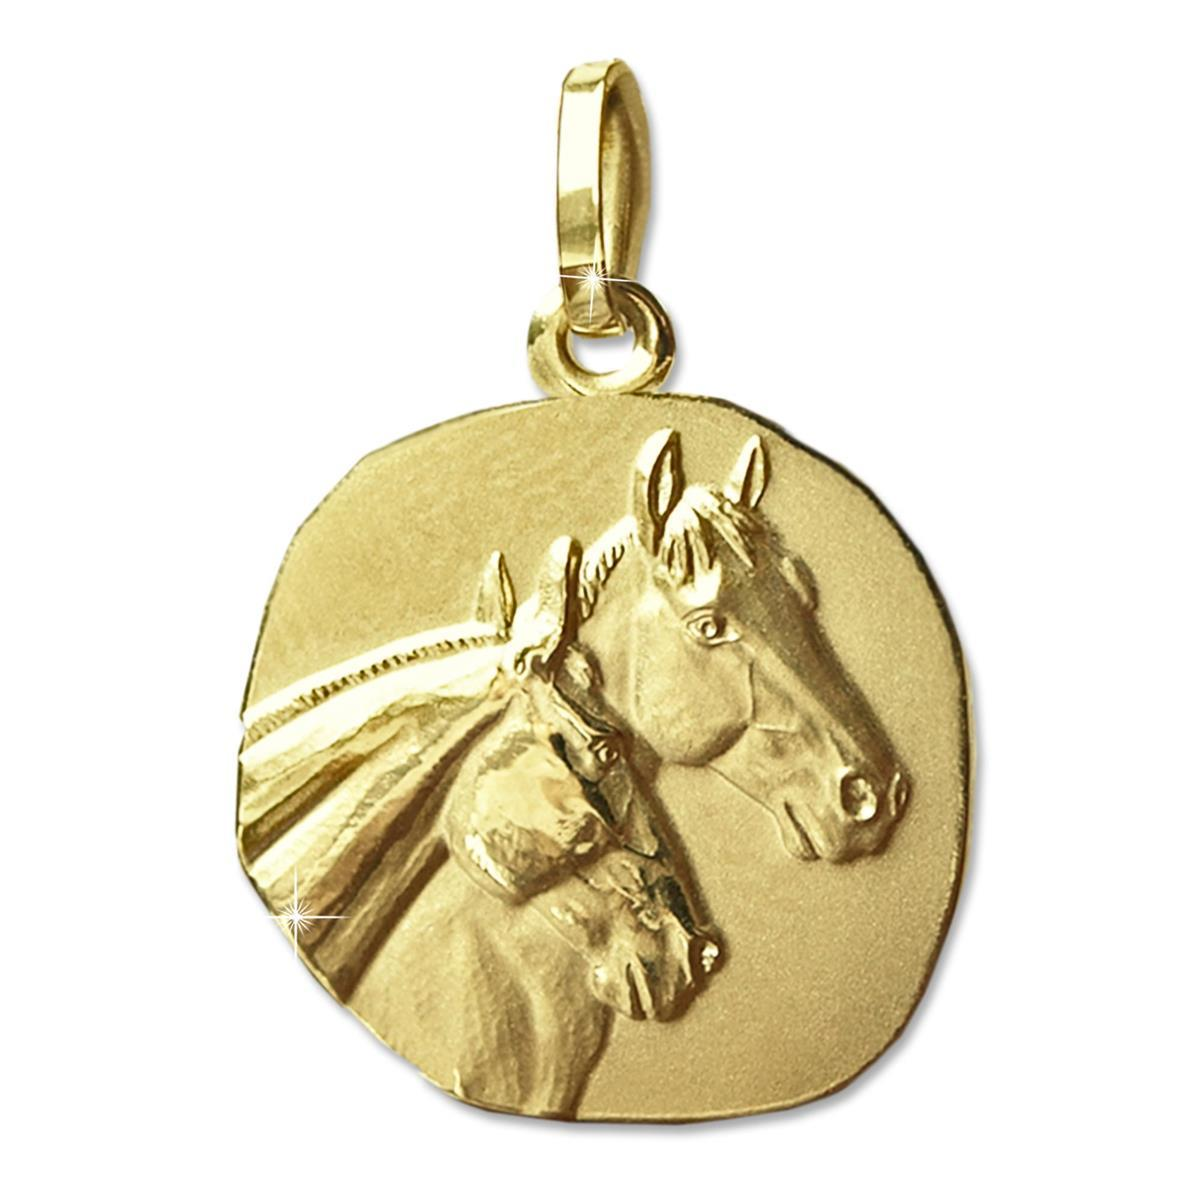 Goldener Anhänger Pferde als Medaille 16 mm matt und glänzend 333 GOLD 8 KARAT